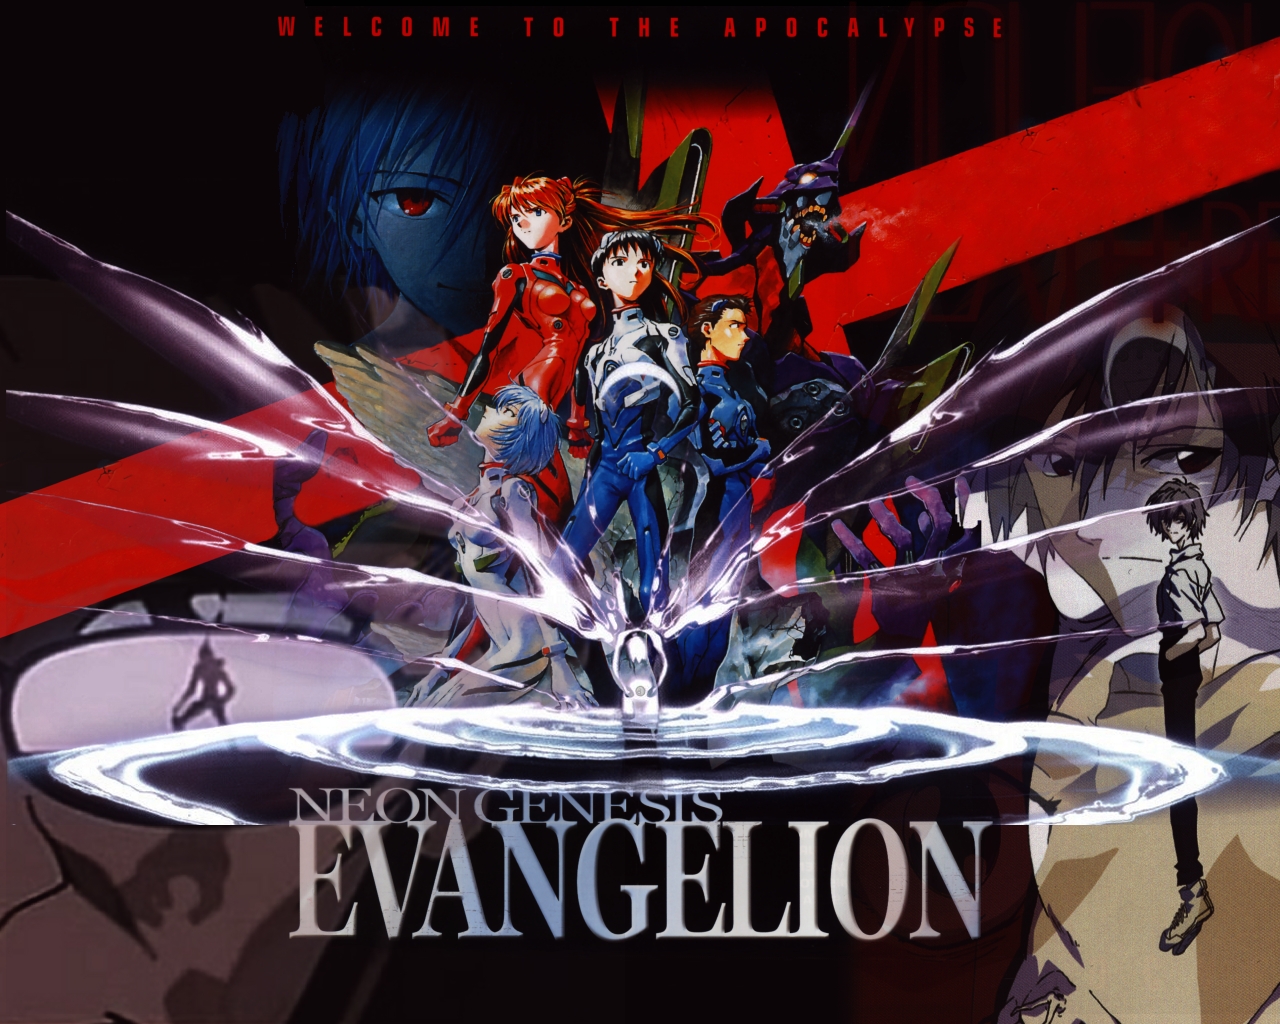 Neon genesis evangelion - bilim kurgu anime önerileri!! - figurex anime önerileri